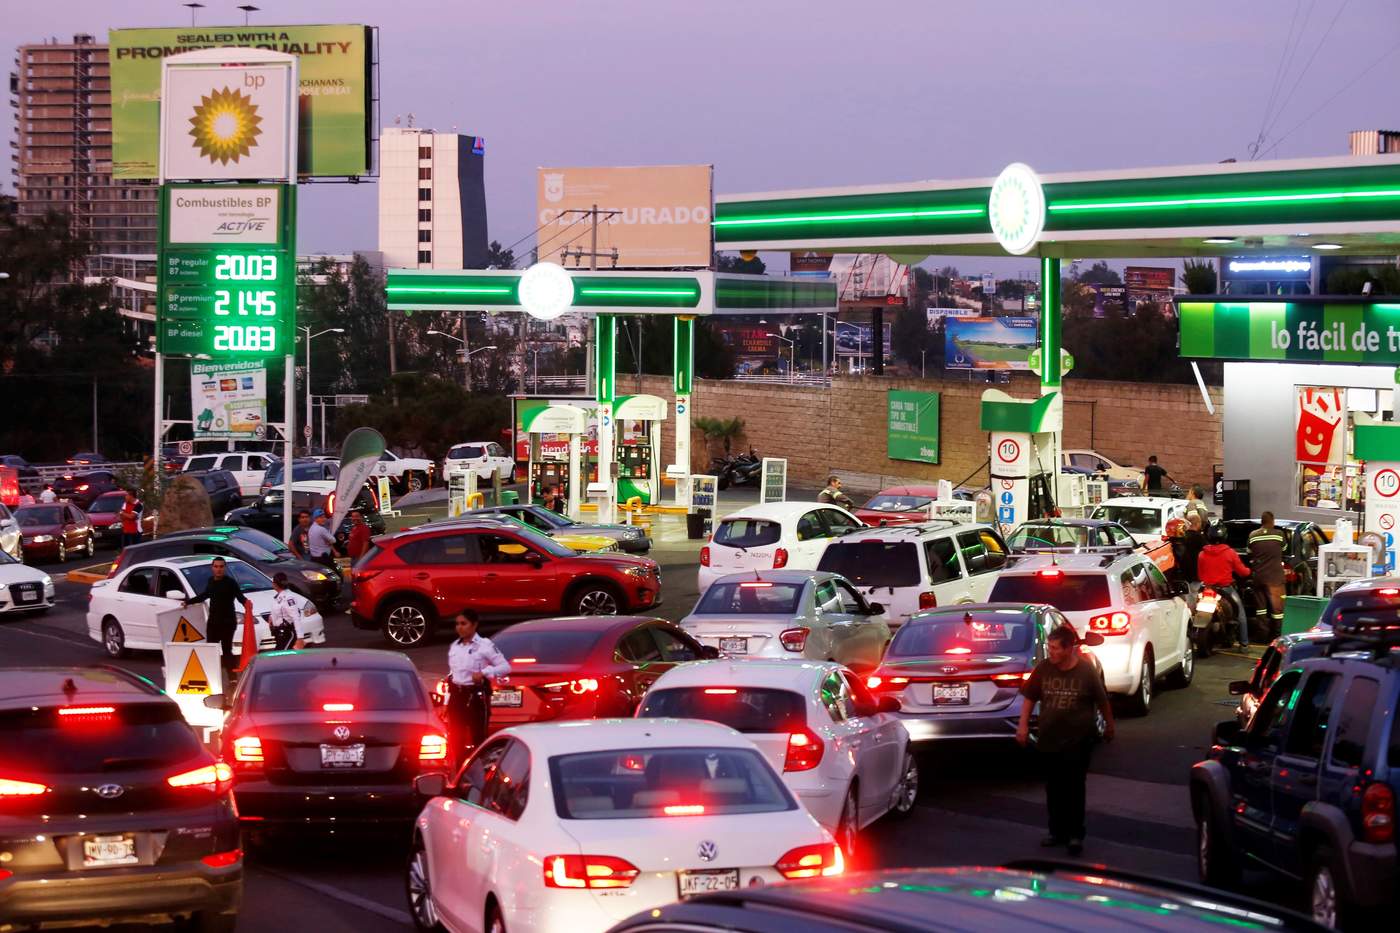 La escasez de gasolina por problemas en el suministro de Petróleos Mexicanos (Pemex) en nueve estados genera filas de varias horas y racionalización del hidrocarburo desde hace varios días, ante un nerviosismo creciente de la población.  (EFE) 